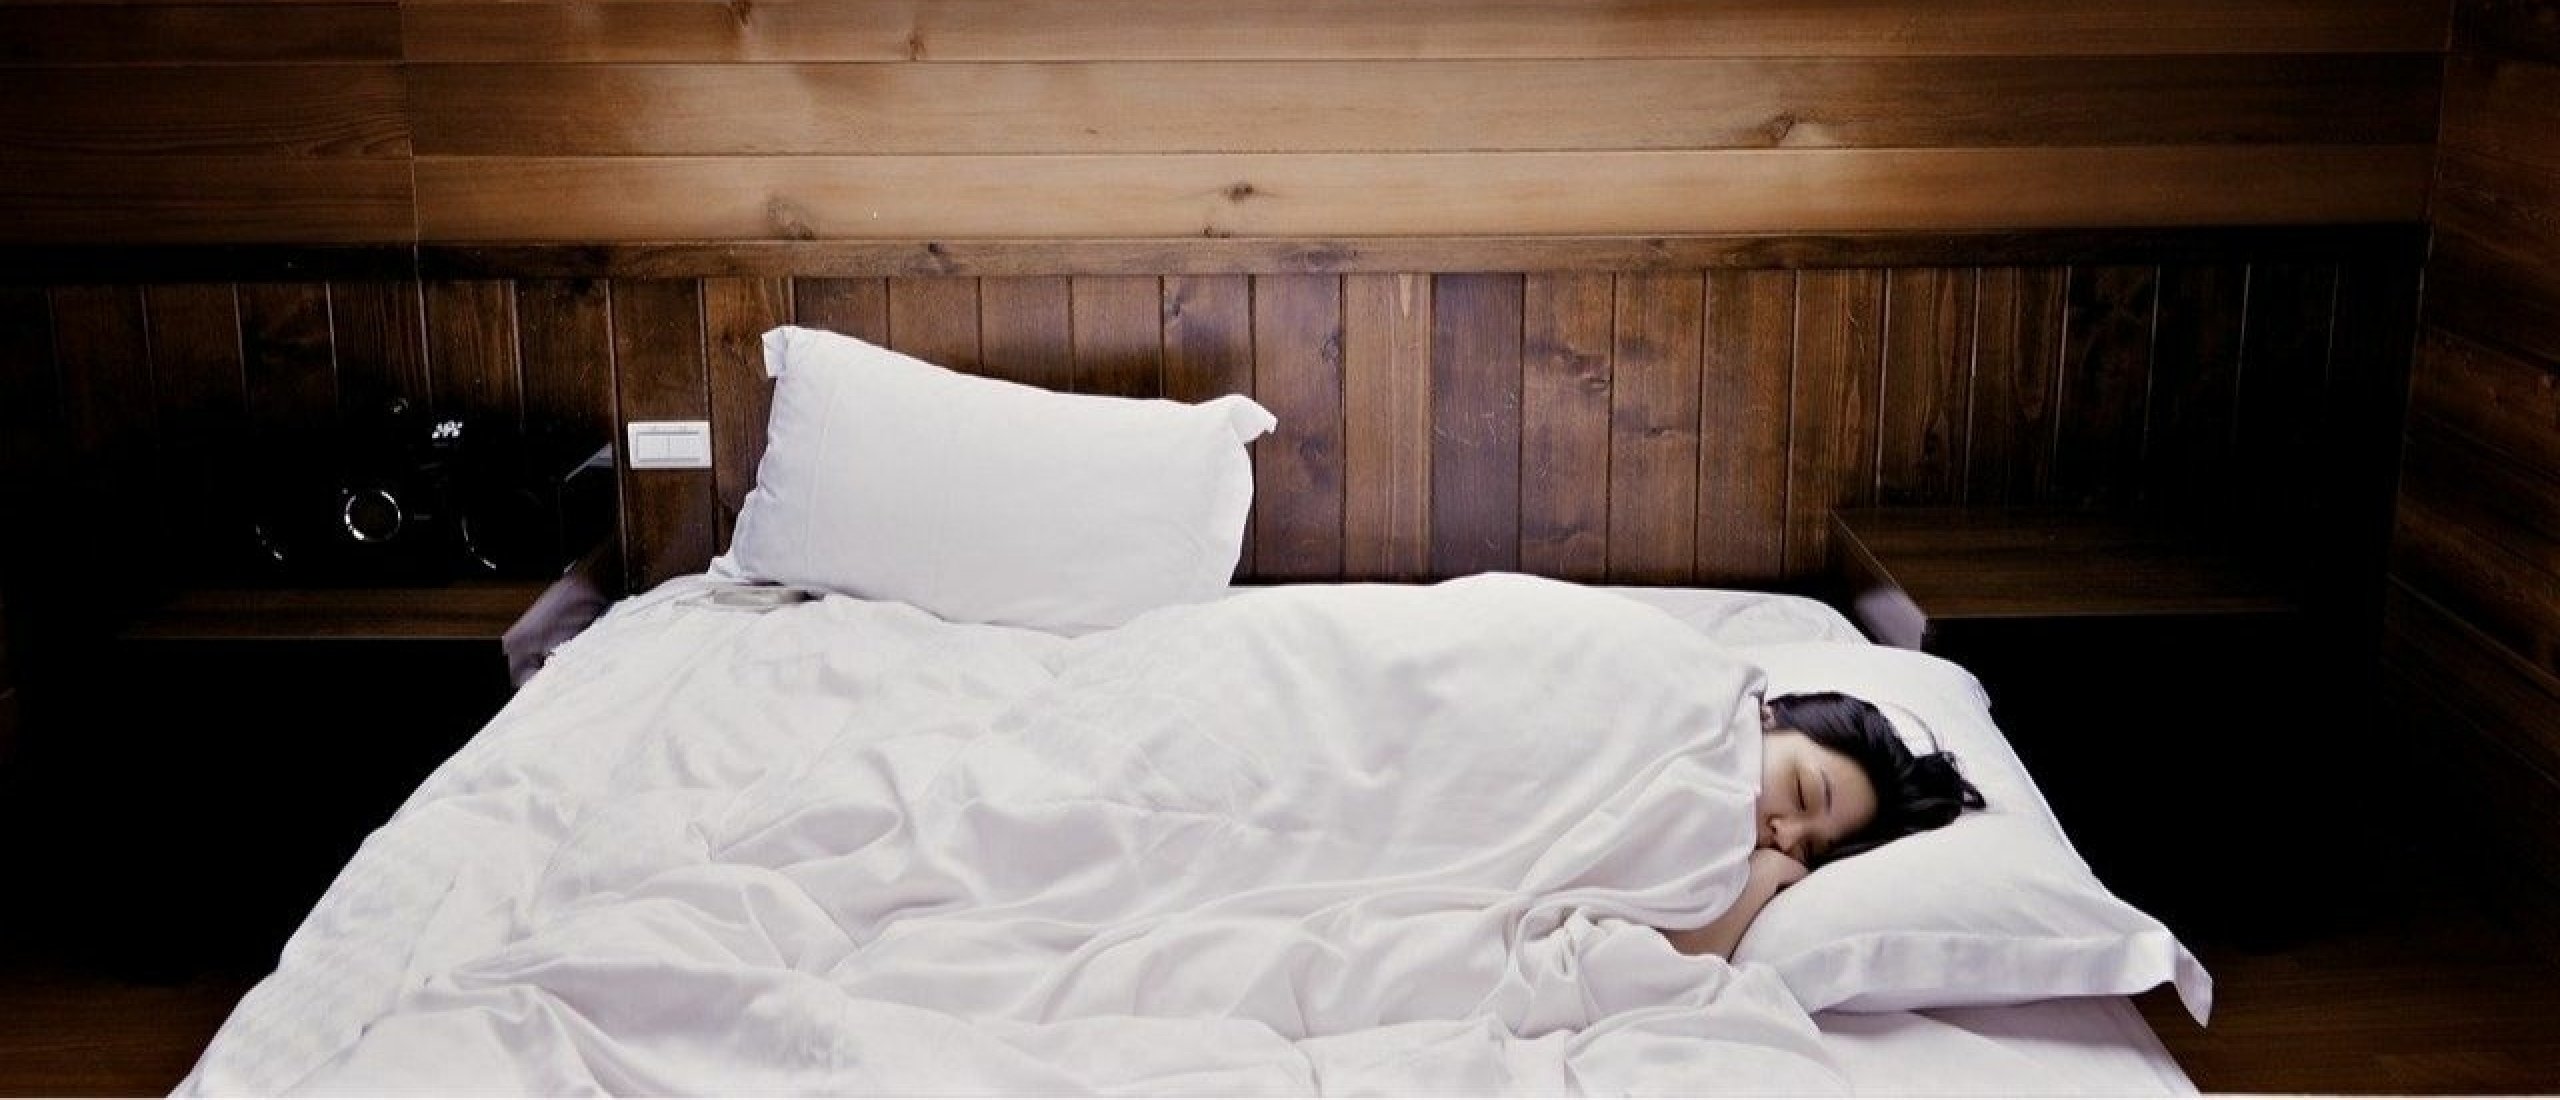 Een vast avondritueel: 7 stappen naar beter slapen